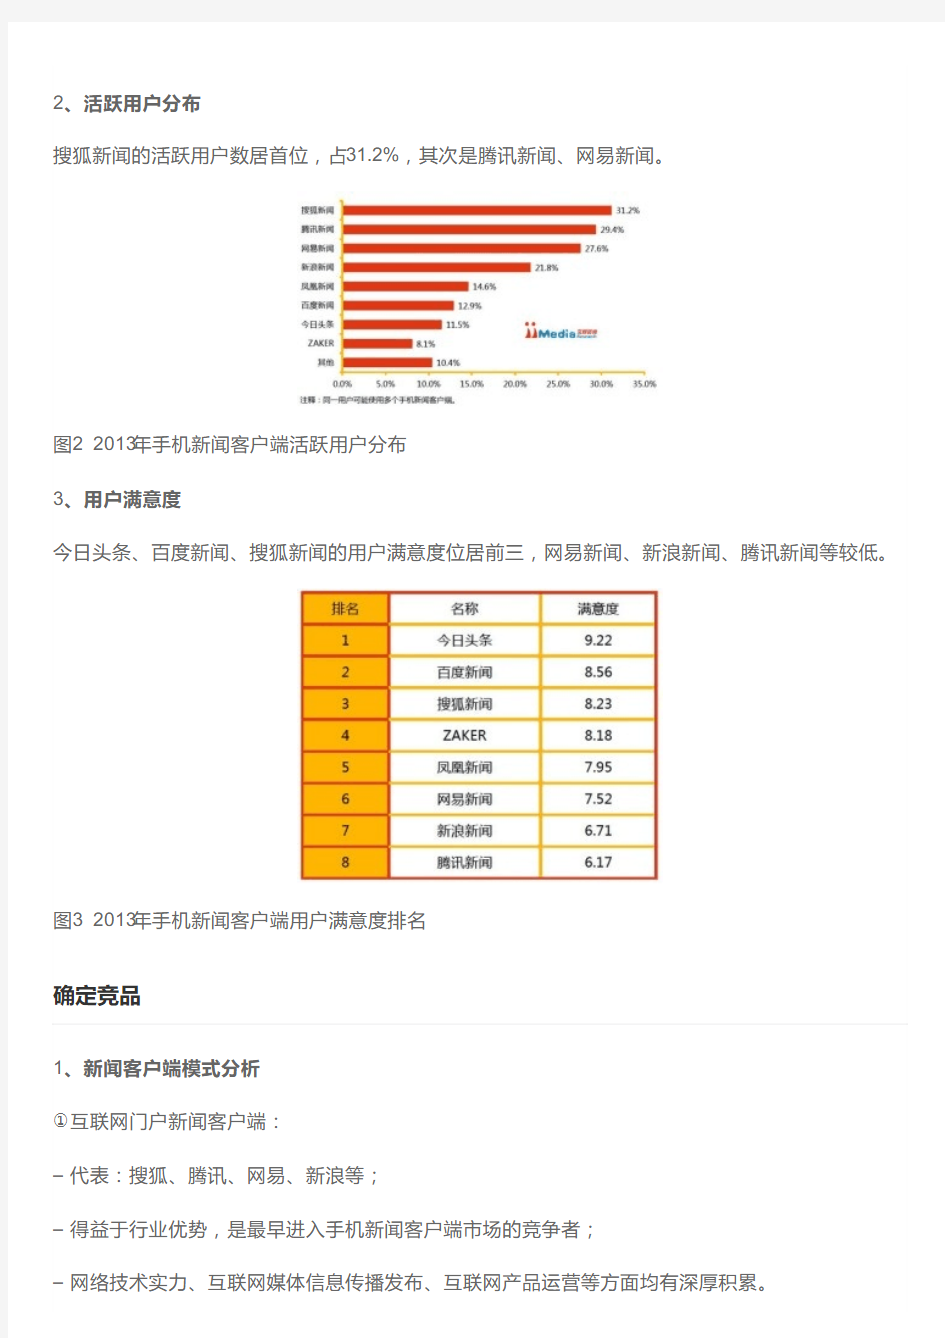 搜狐新闻客户端竞品分析报告